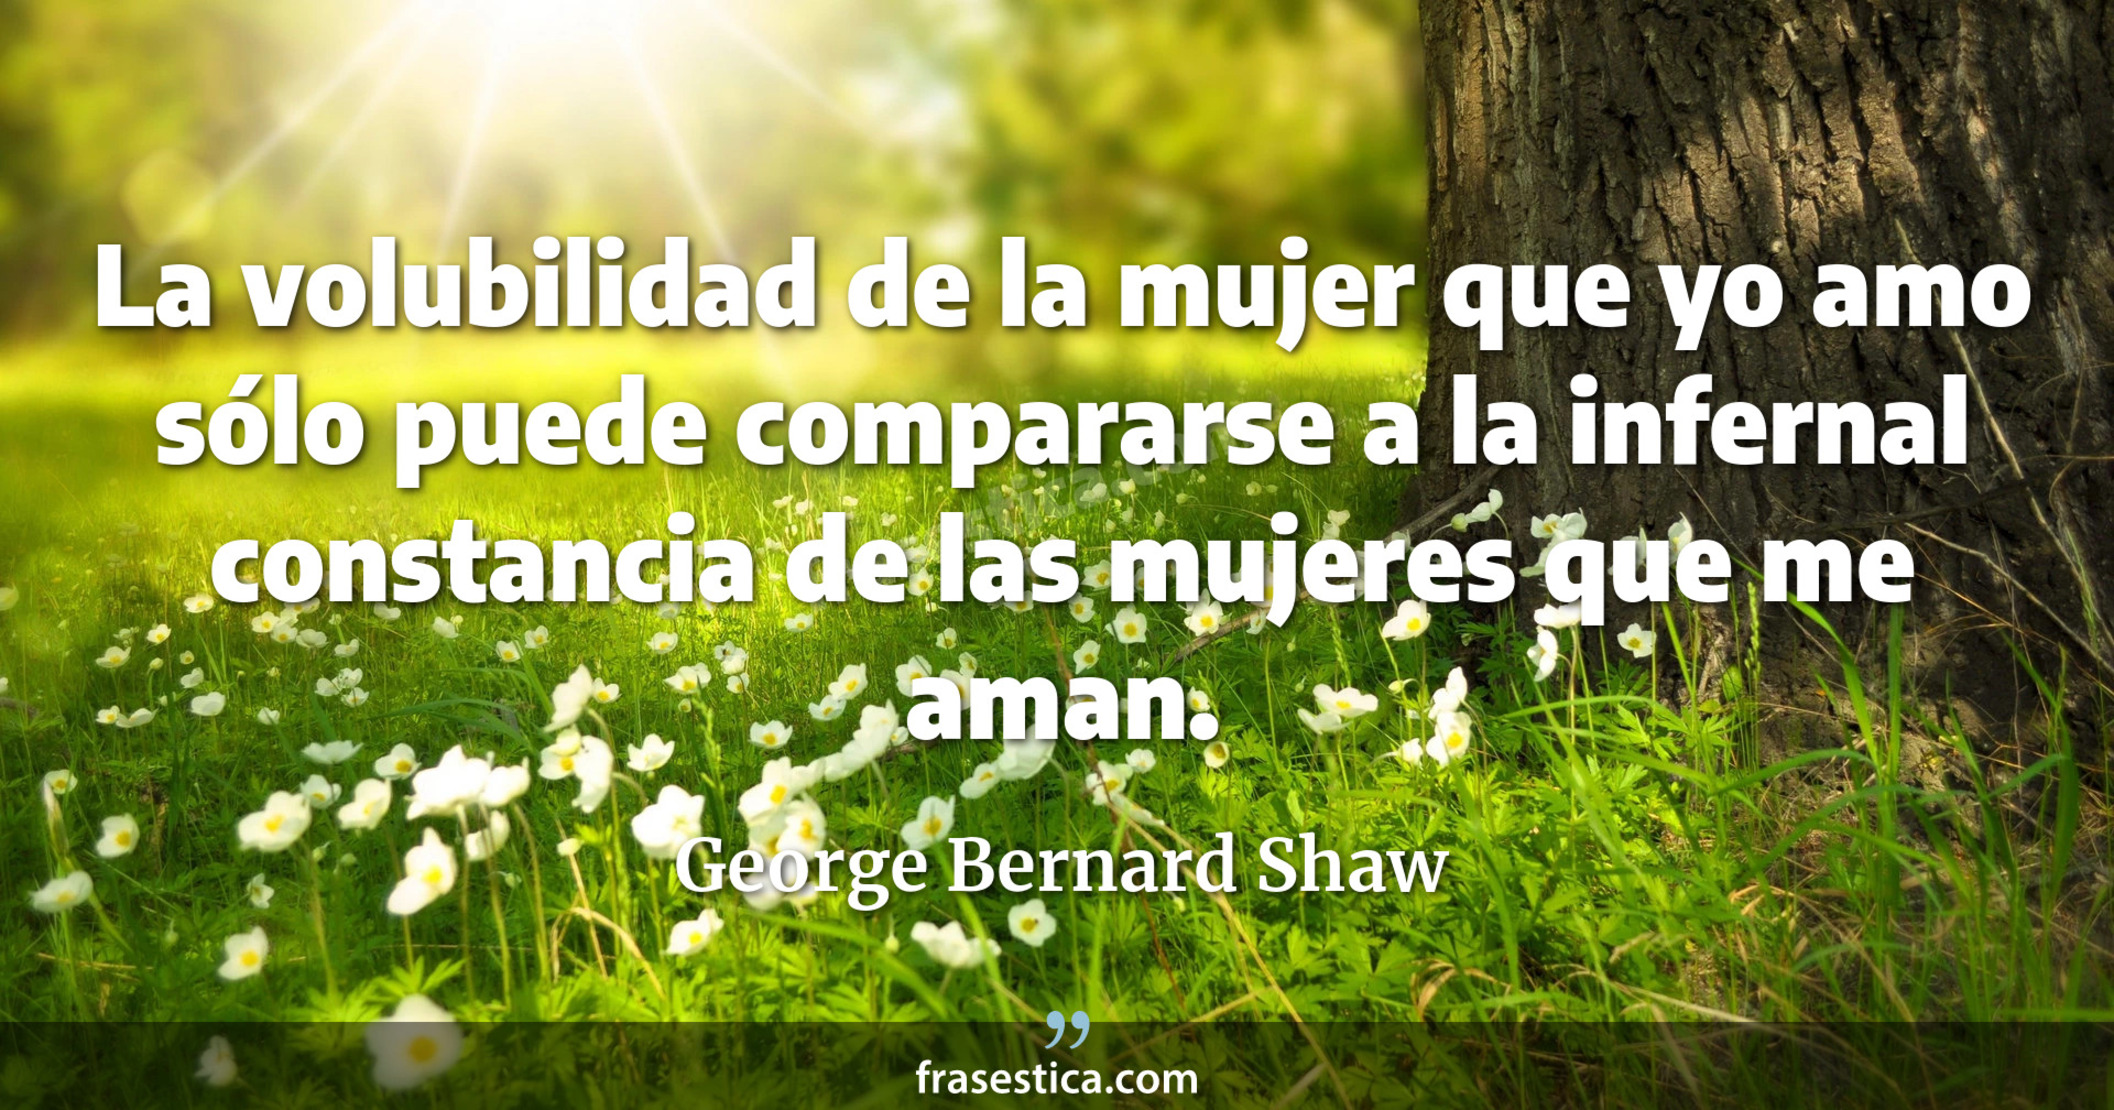 La volubilidad de la mujer que yo amo sólo puede compararse a la infernal constancia de las mujeres que me aman. - George Bernard Shaw